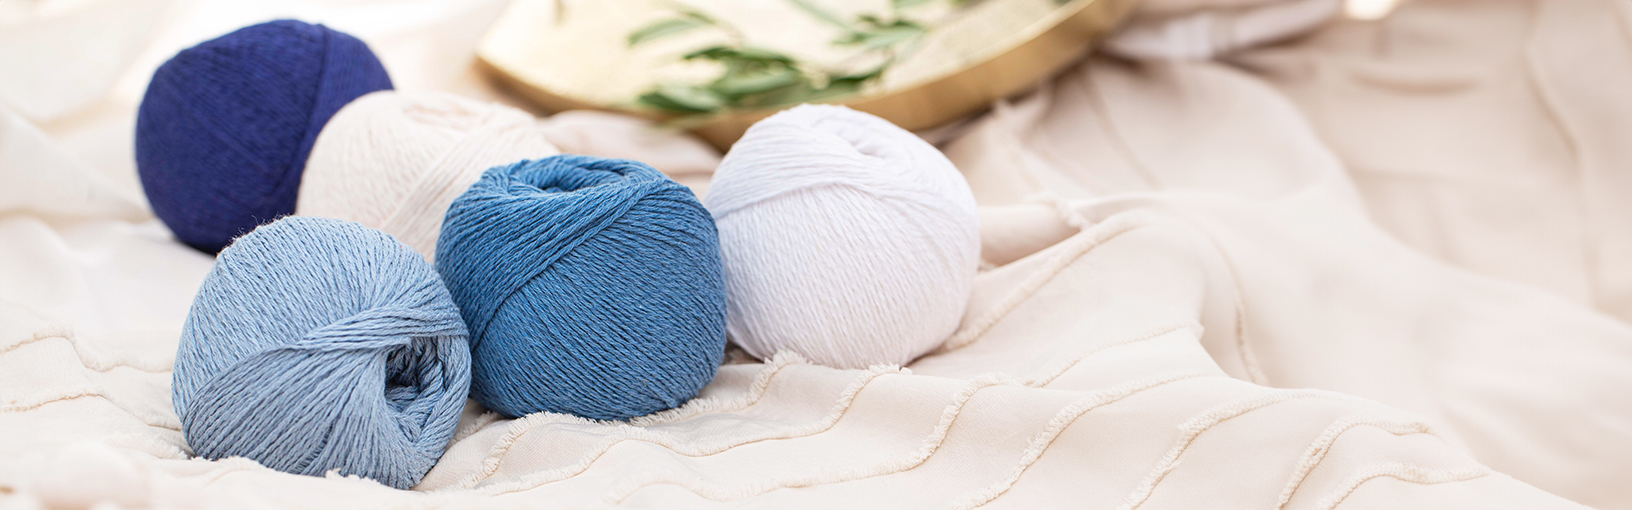 INNOVATIVE, ERGONOMIC - HIGHEST QUALITY Lana Grossa Needles | NEEDLE SETS | Circular knitting needle sets